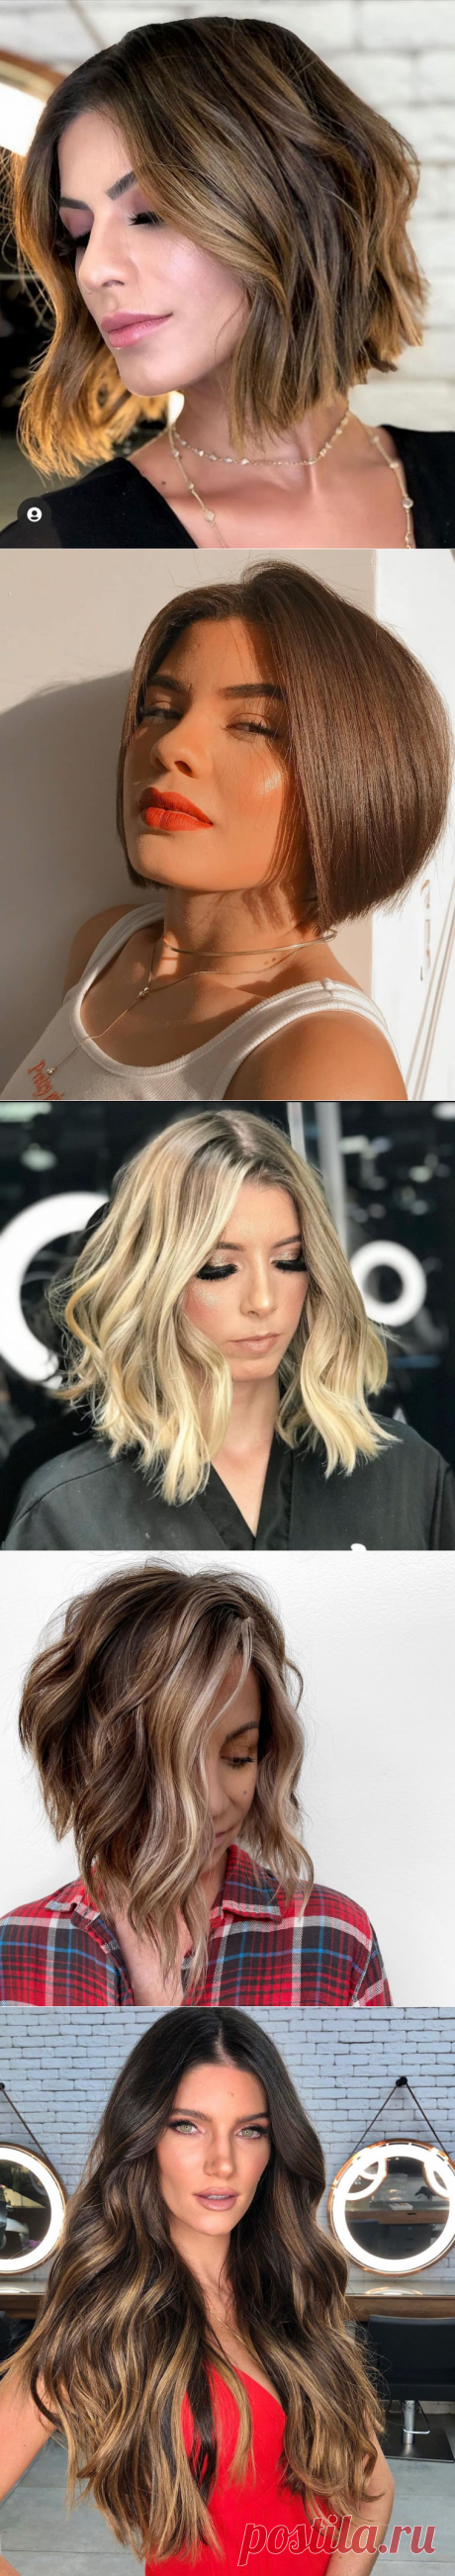 12 безупречных стрижек для леди старше 30 лет на густые волосы 2021 | Новости моды